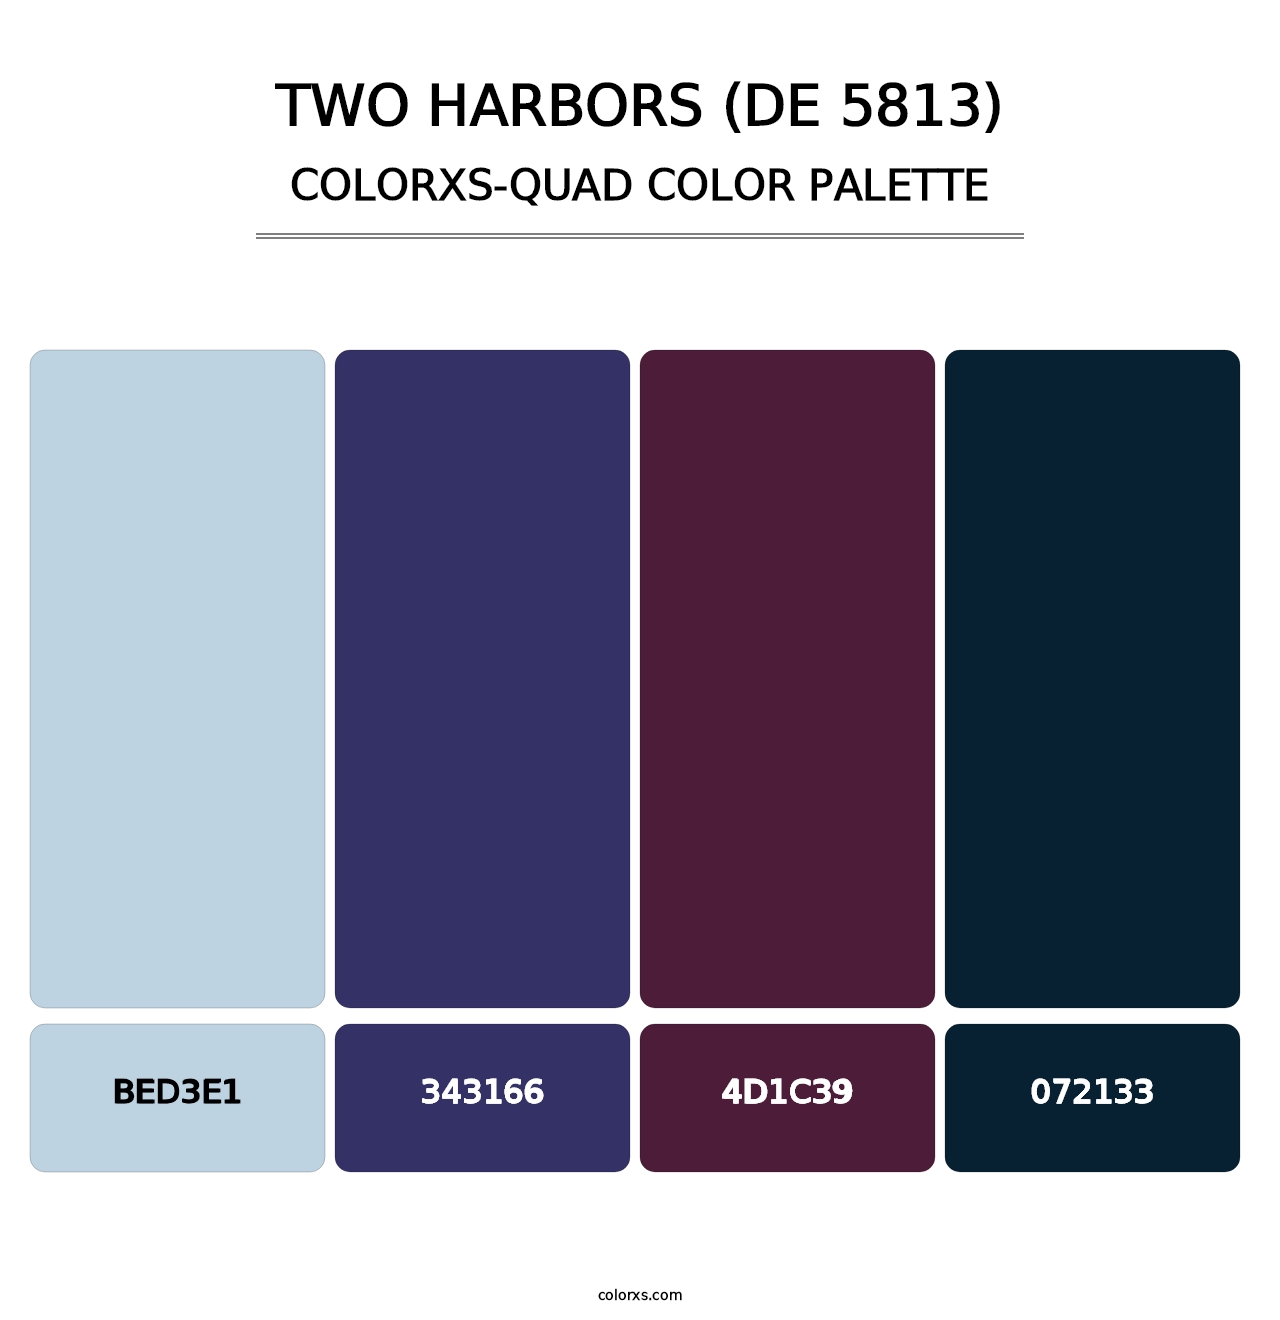 Two Harbors (DE 5813) - Colorxs Quad Palette